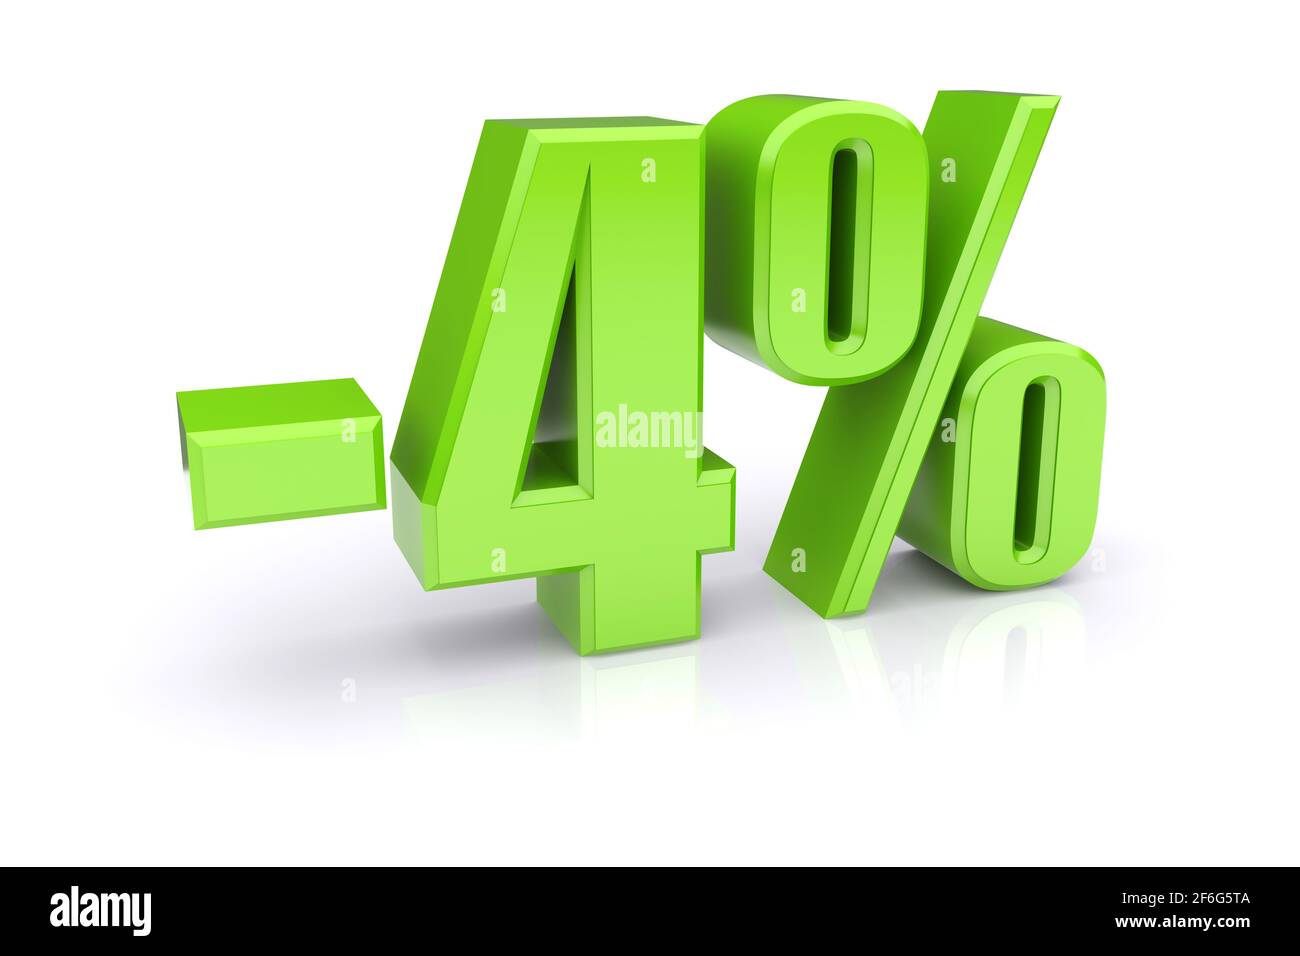 Icona verde del tasso percentuale del 4% su sfondo bianco. immagine 3d rappresentata Foto Stock